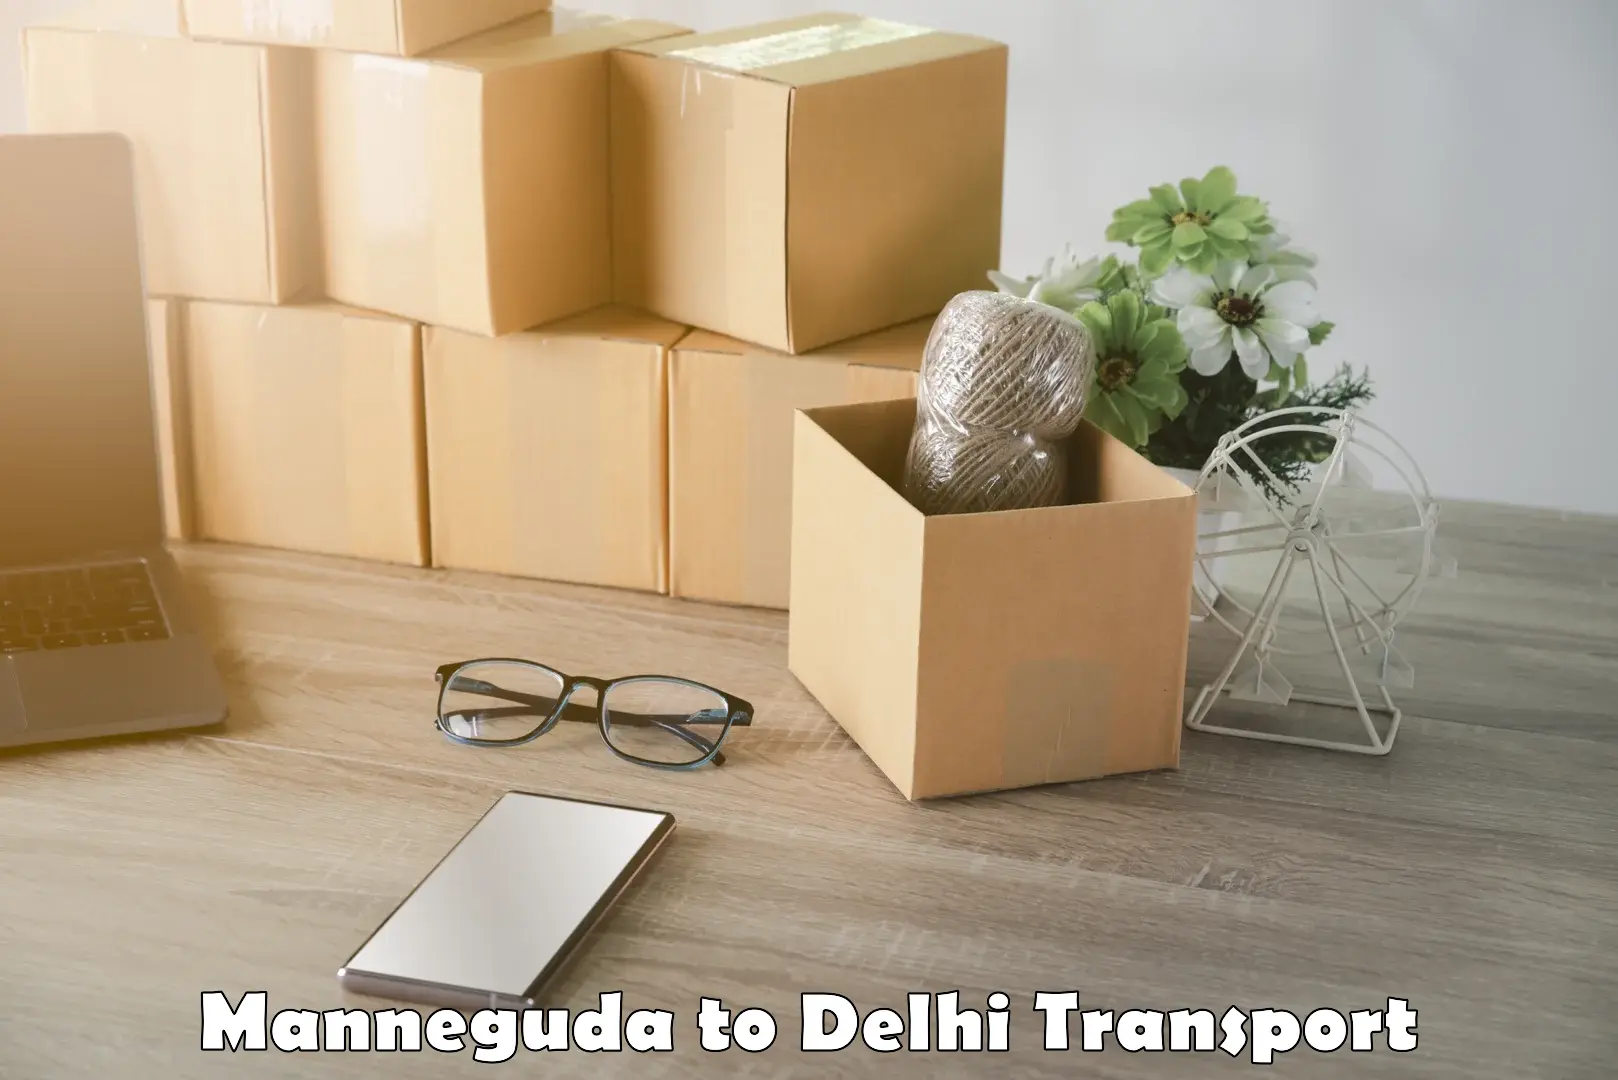 Container transport service Manneguda to Delhi